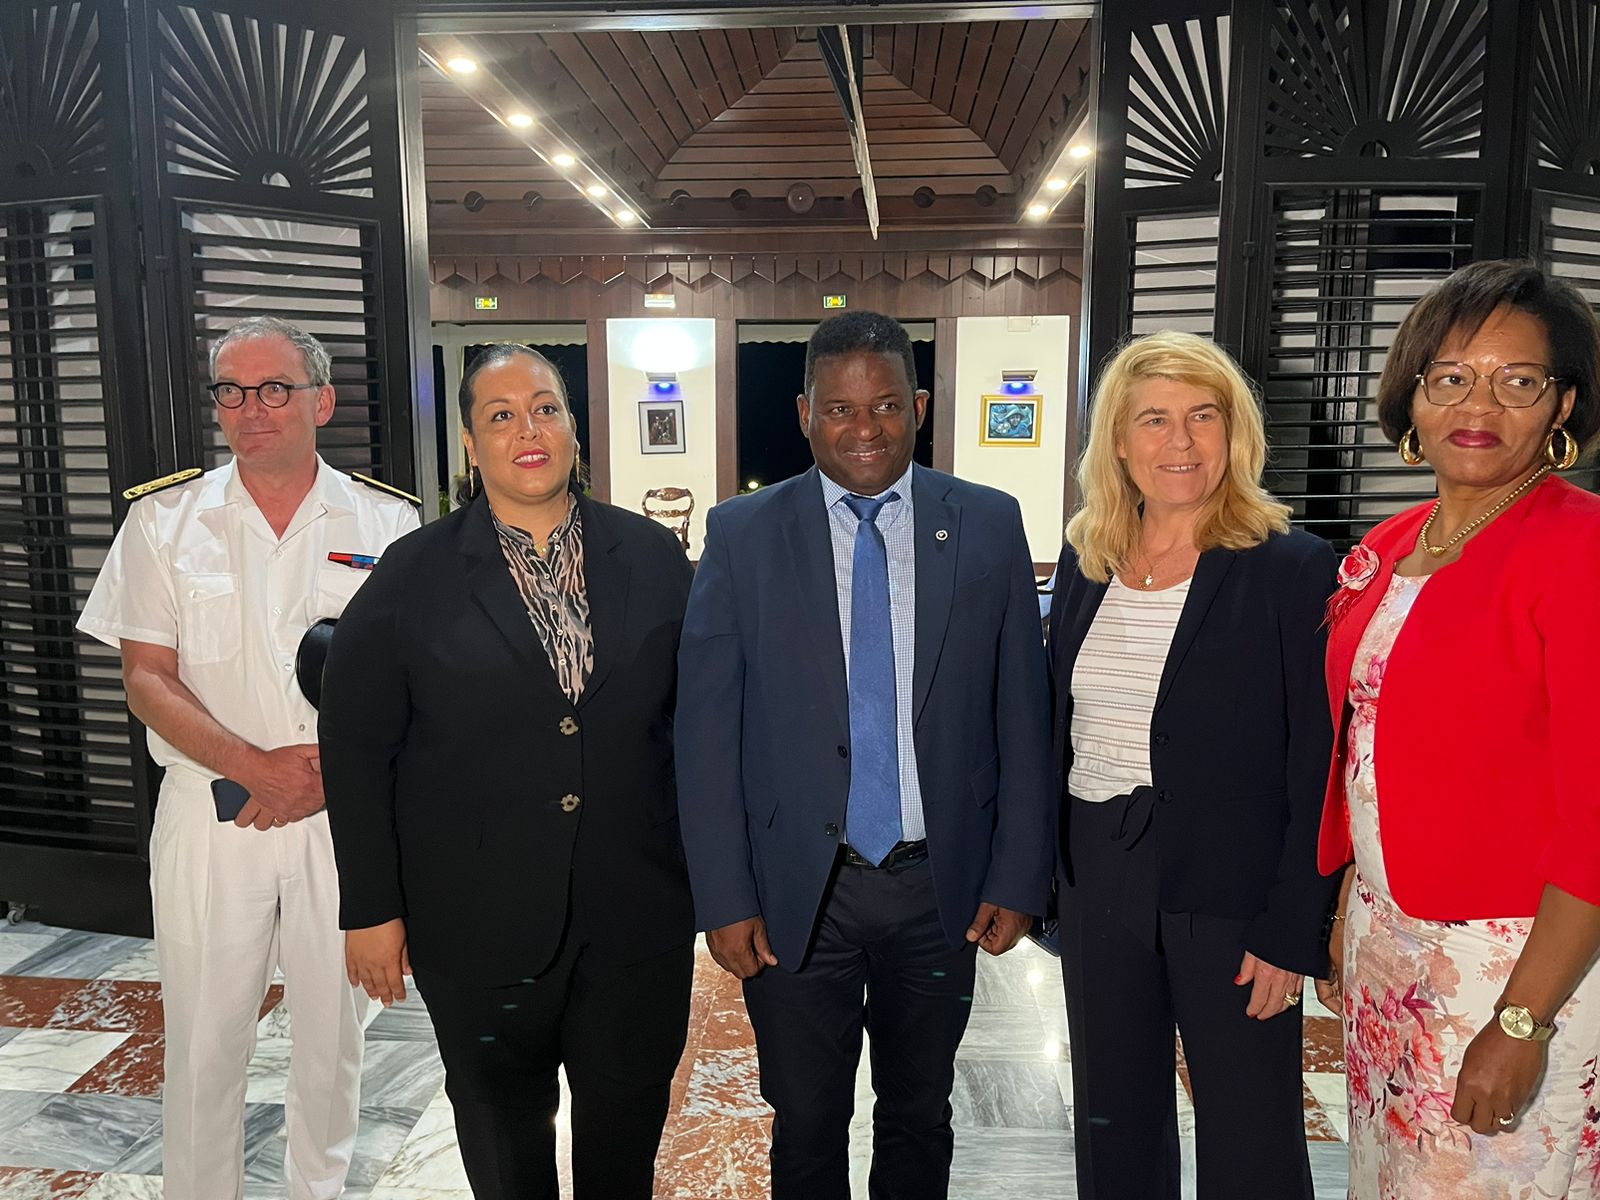     En Guadeloupe, Dominique Faure rencontre les présidents de la Région et du Département

